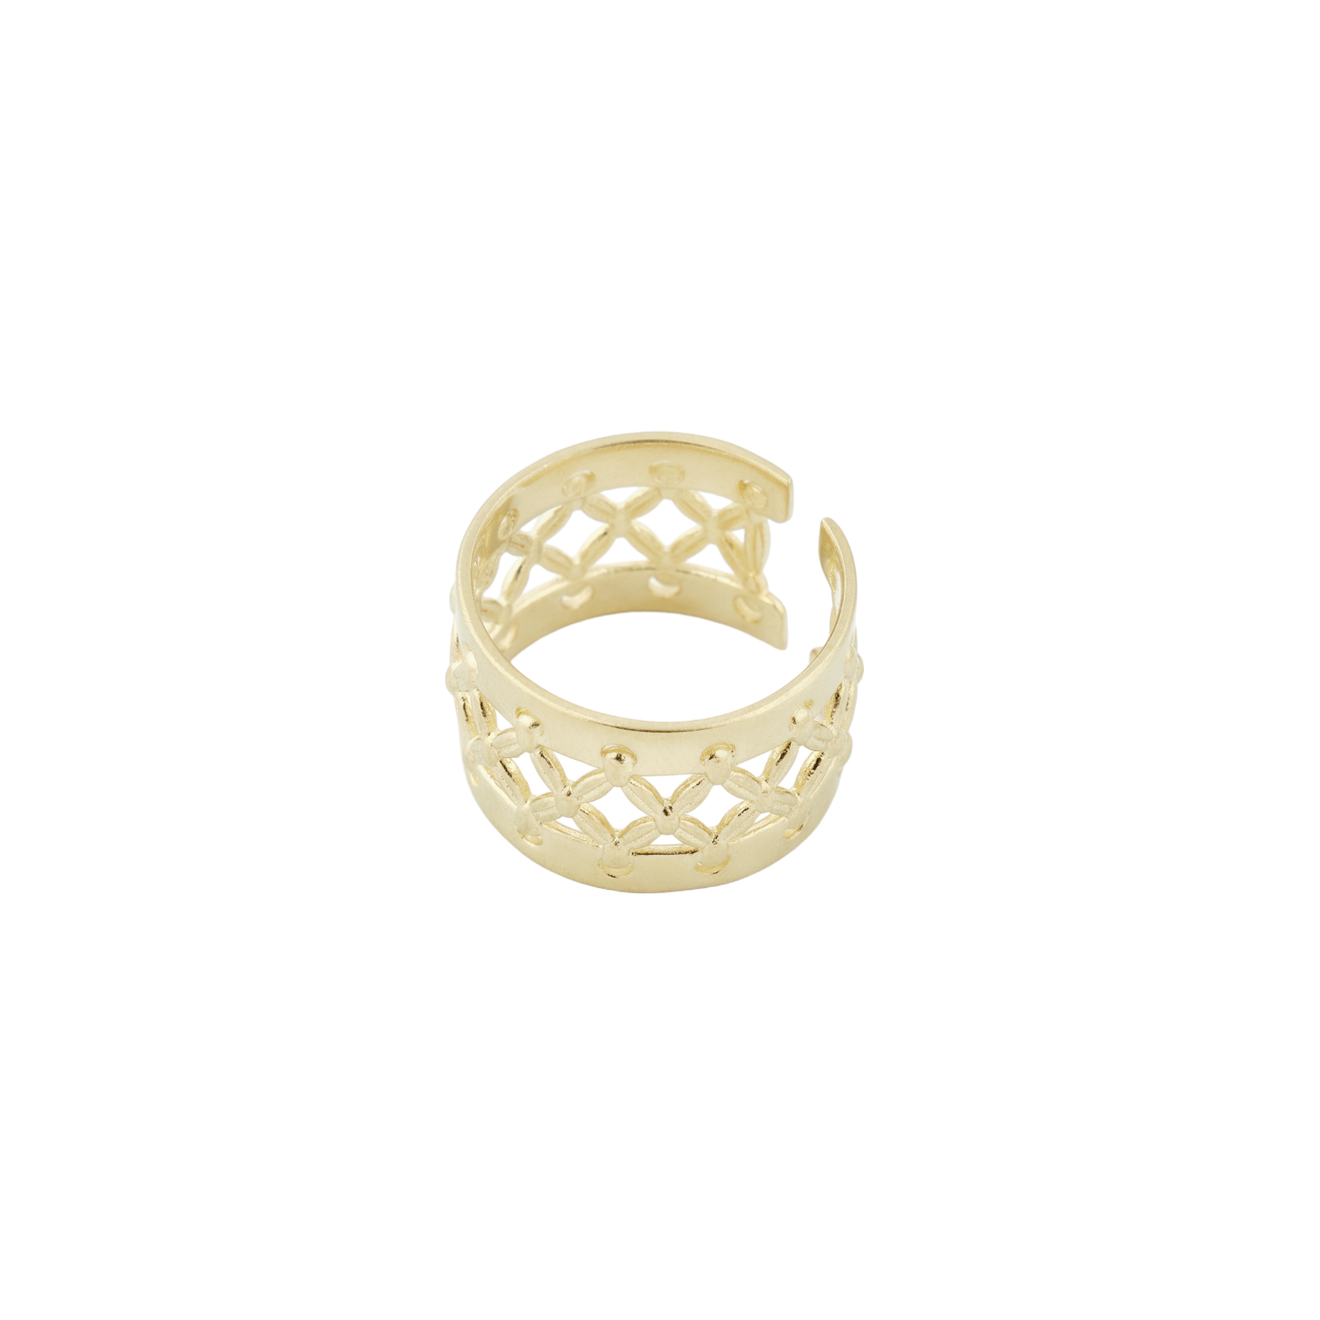 Maru Jewelry Кольцо «Связь» из бронзы с позолотой liya кольцо с позолотой и вставками из эмали